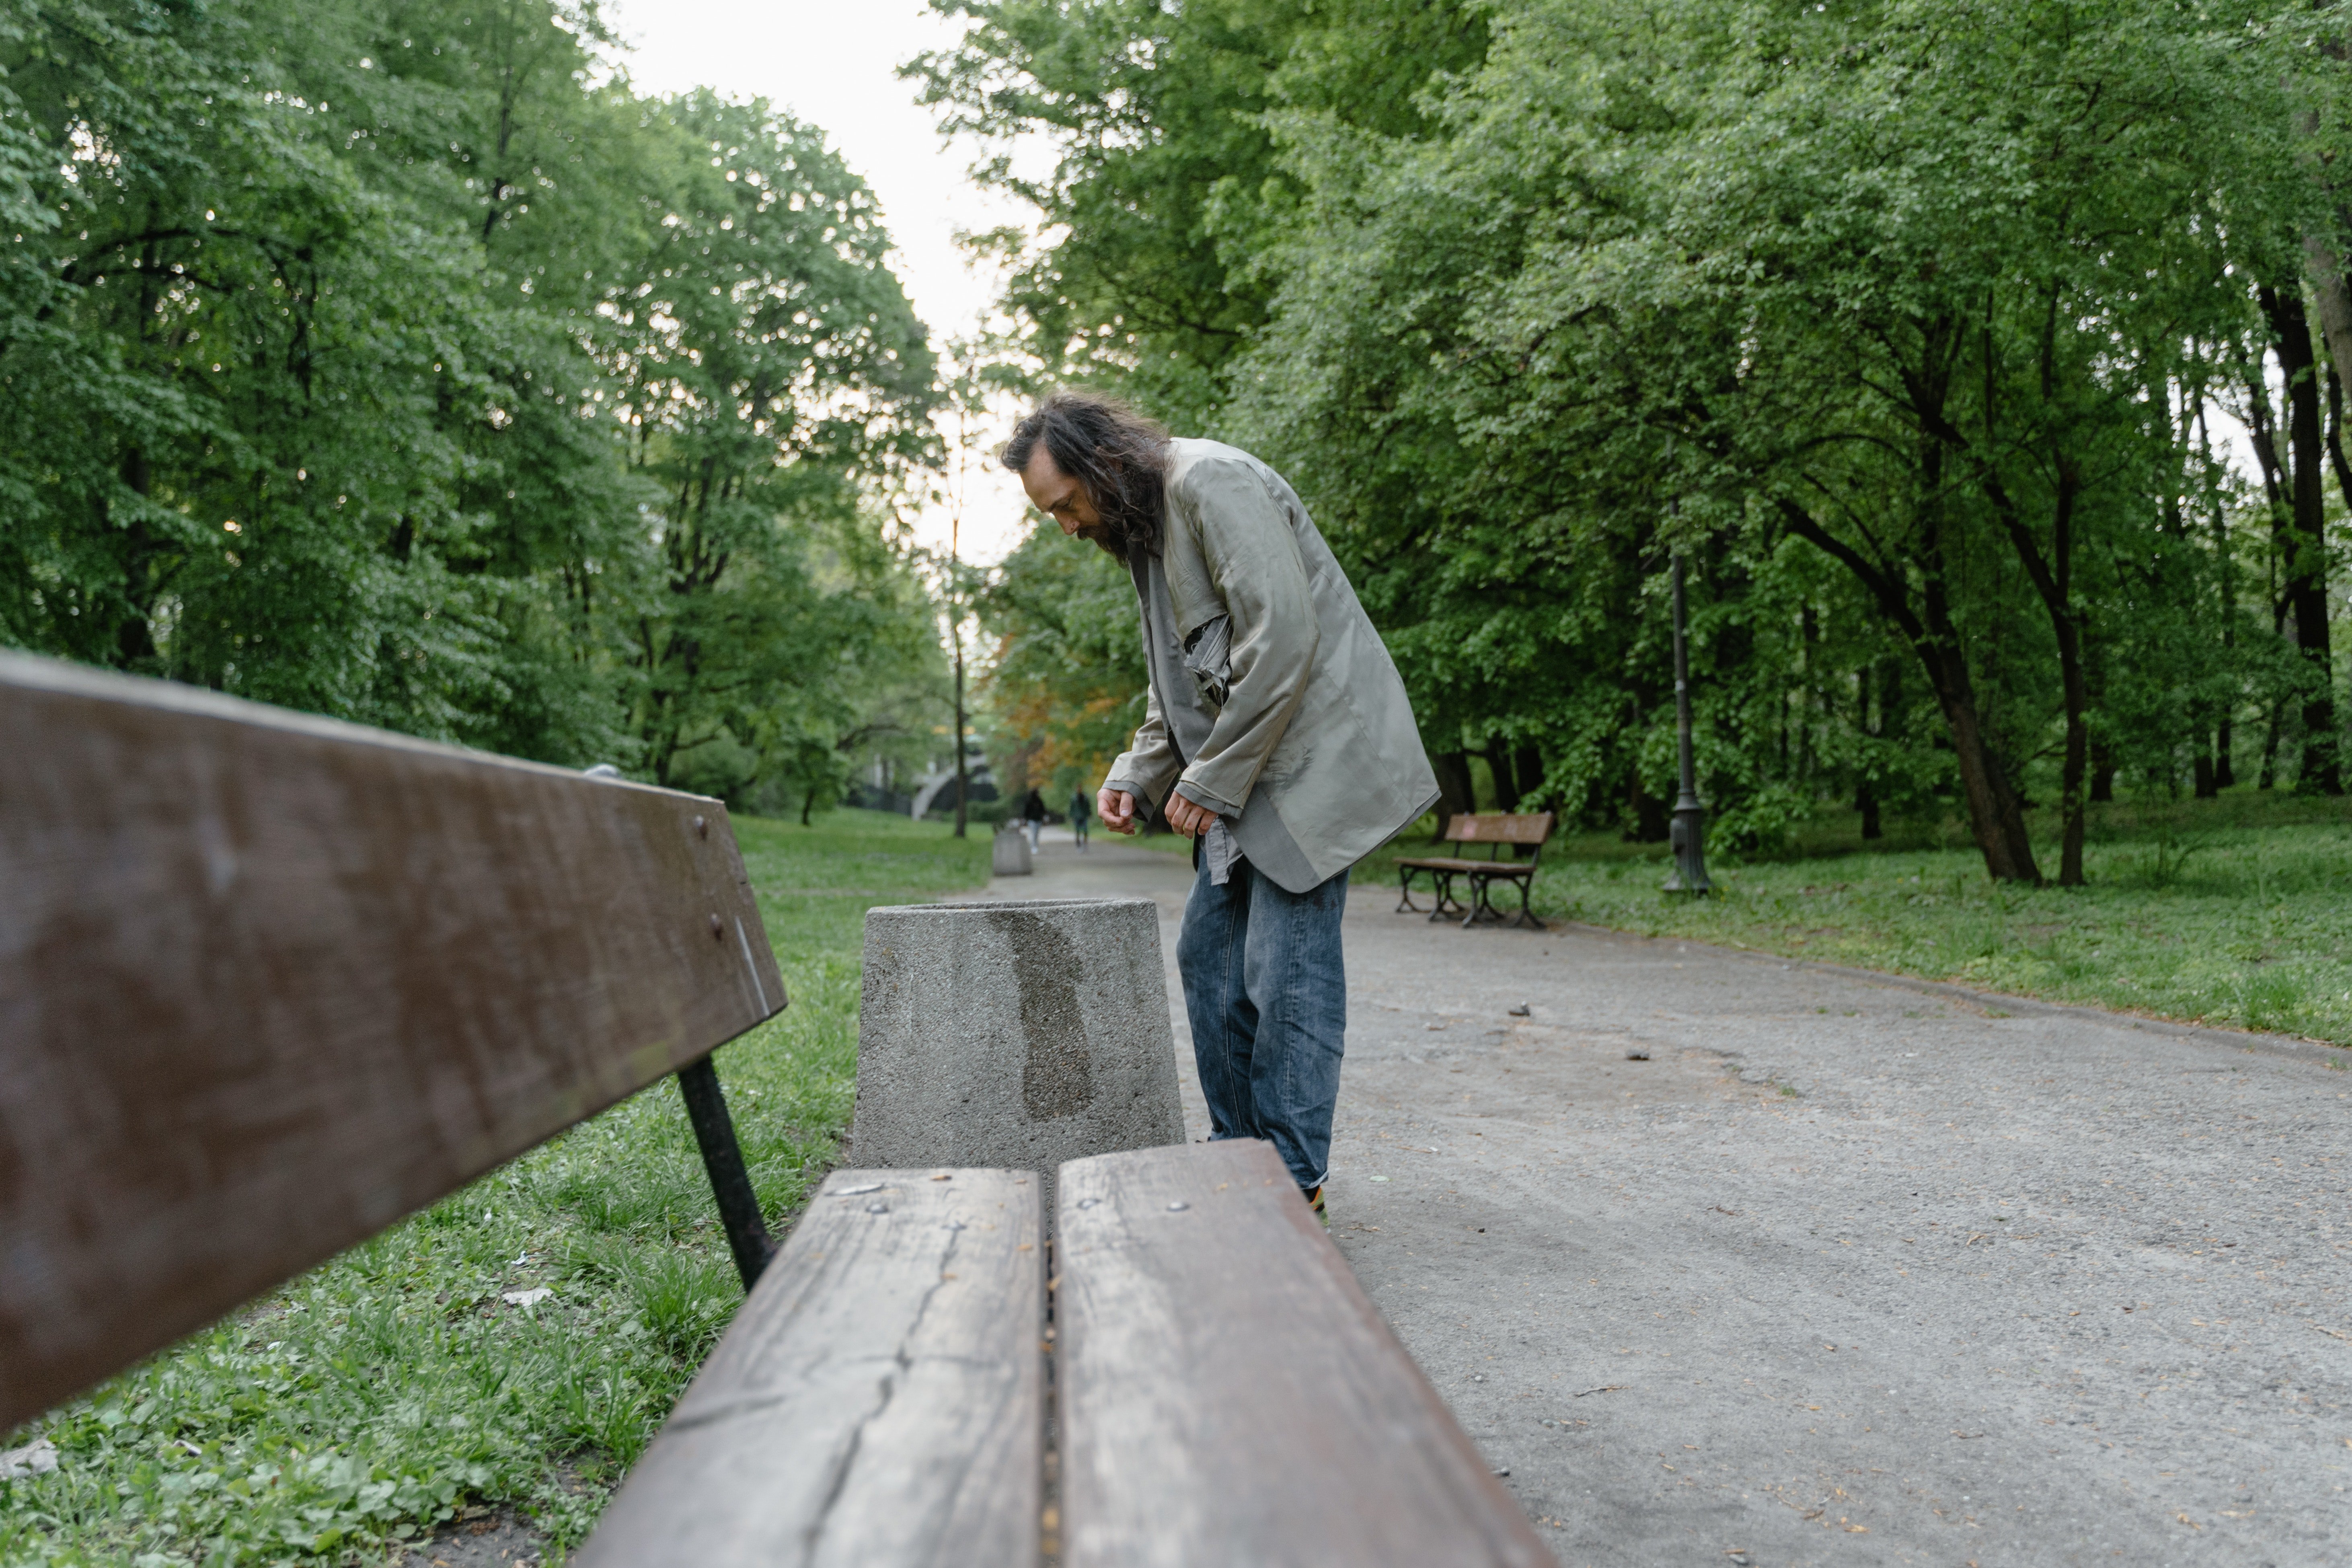 Un indigente cerca del banco de un parque. | Foto: Pexels